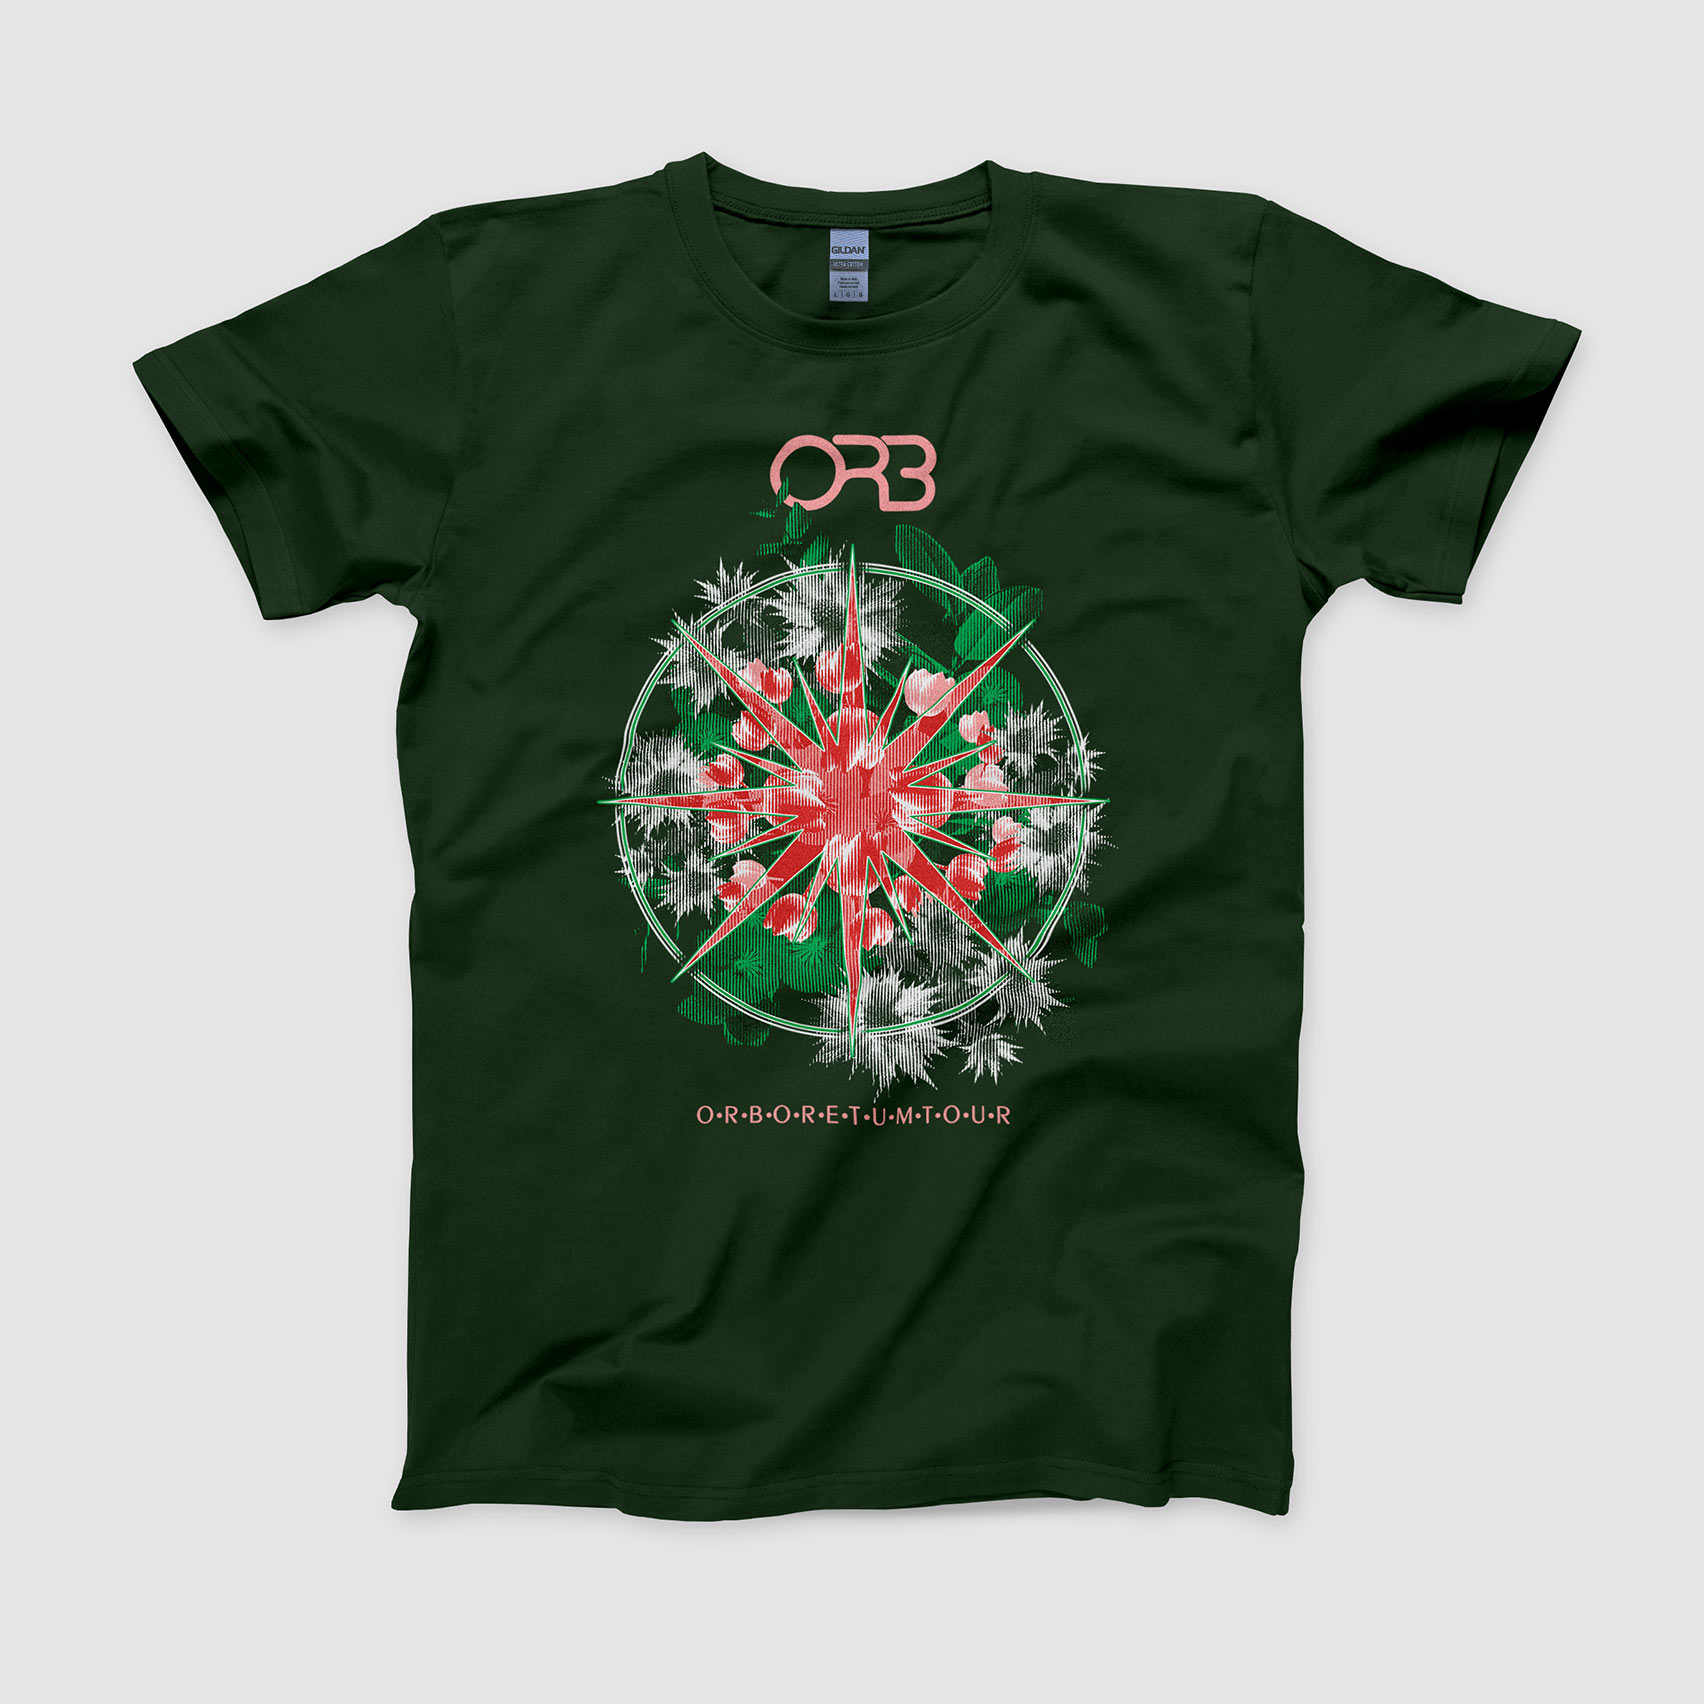 The Orb tour t-shirt design front